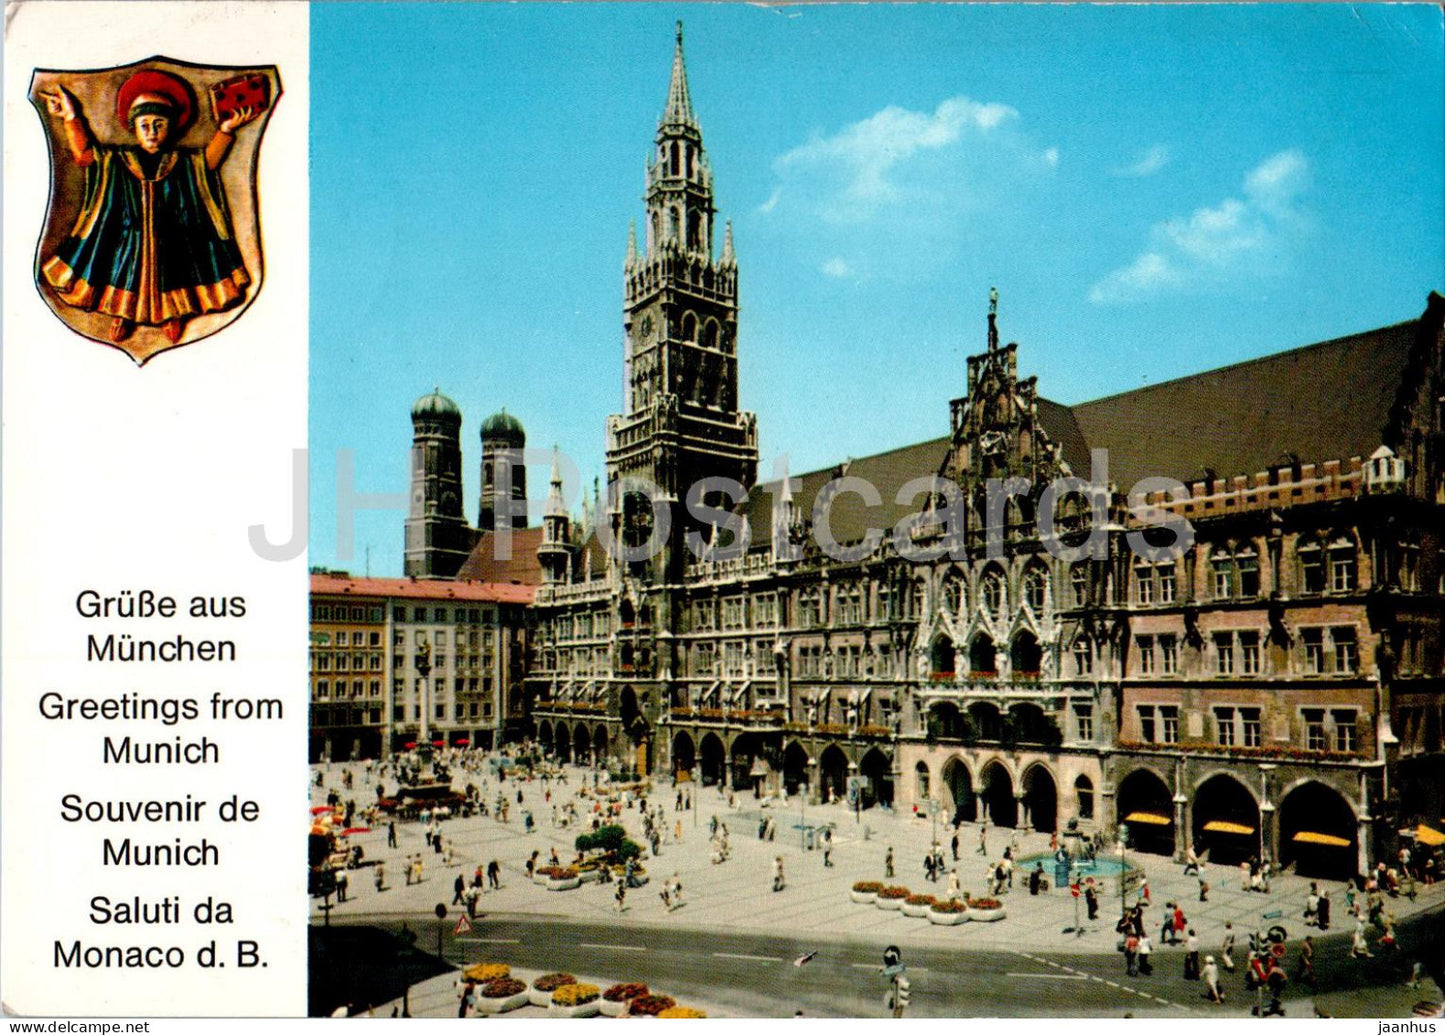 Munchen - Marienplatz mit Rathaus und Frauenkirche - 31 - 1982 - Germany - used - JH Postcards